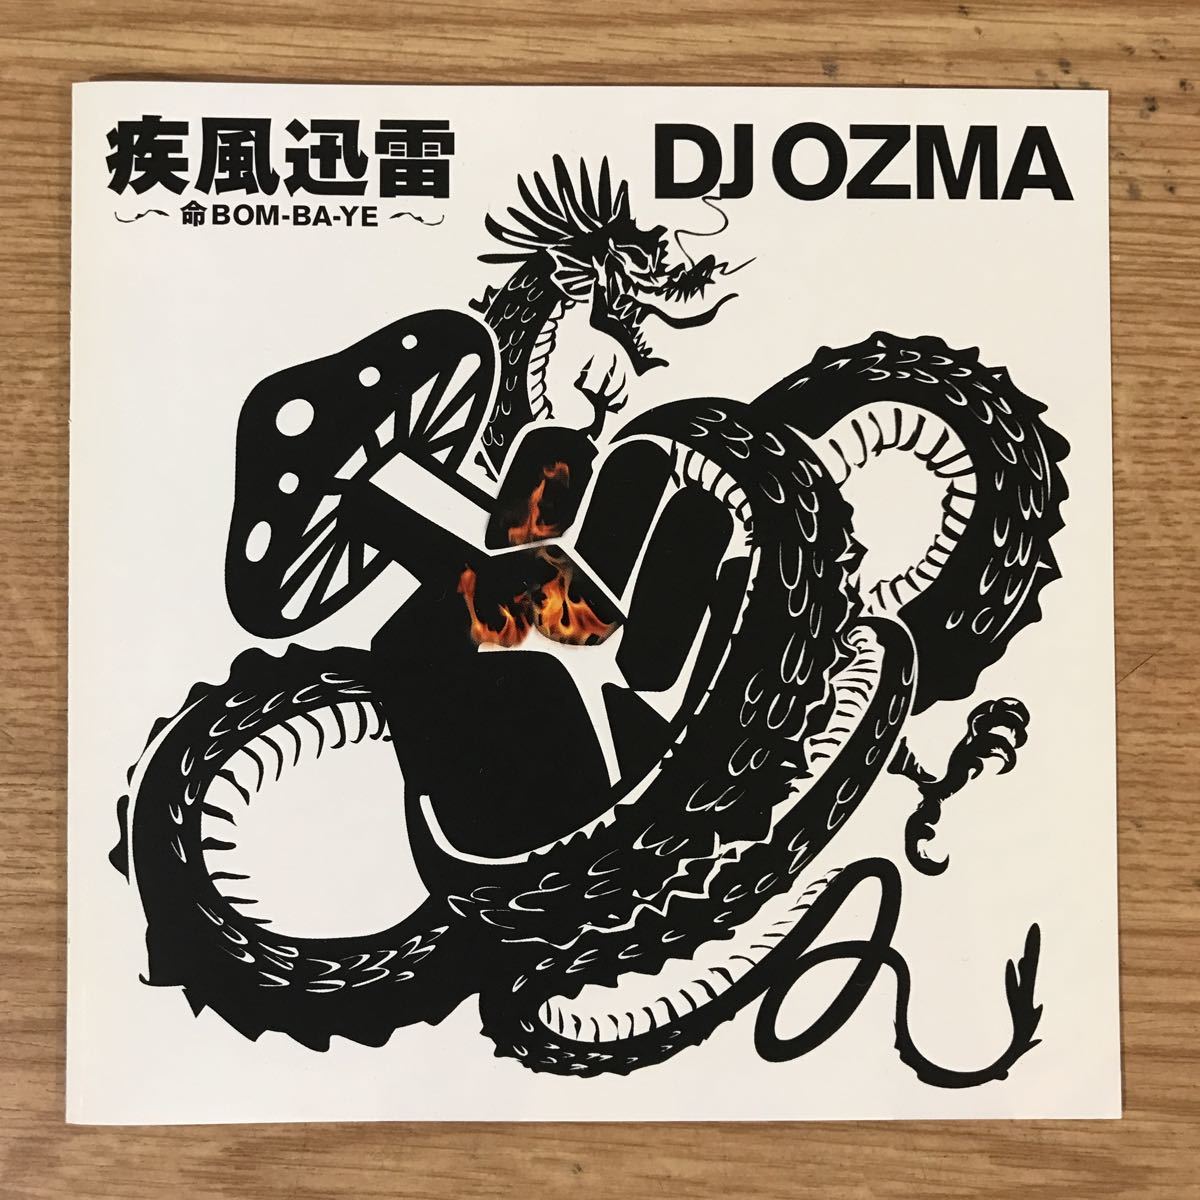 (B242)中古CD100円 DJ OZMA 疾風迅雷~命BOM-BA-YE~_画像1